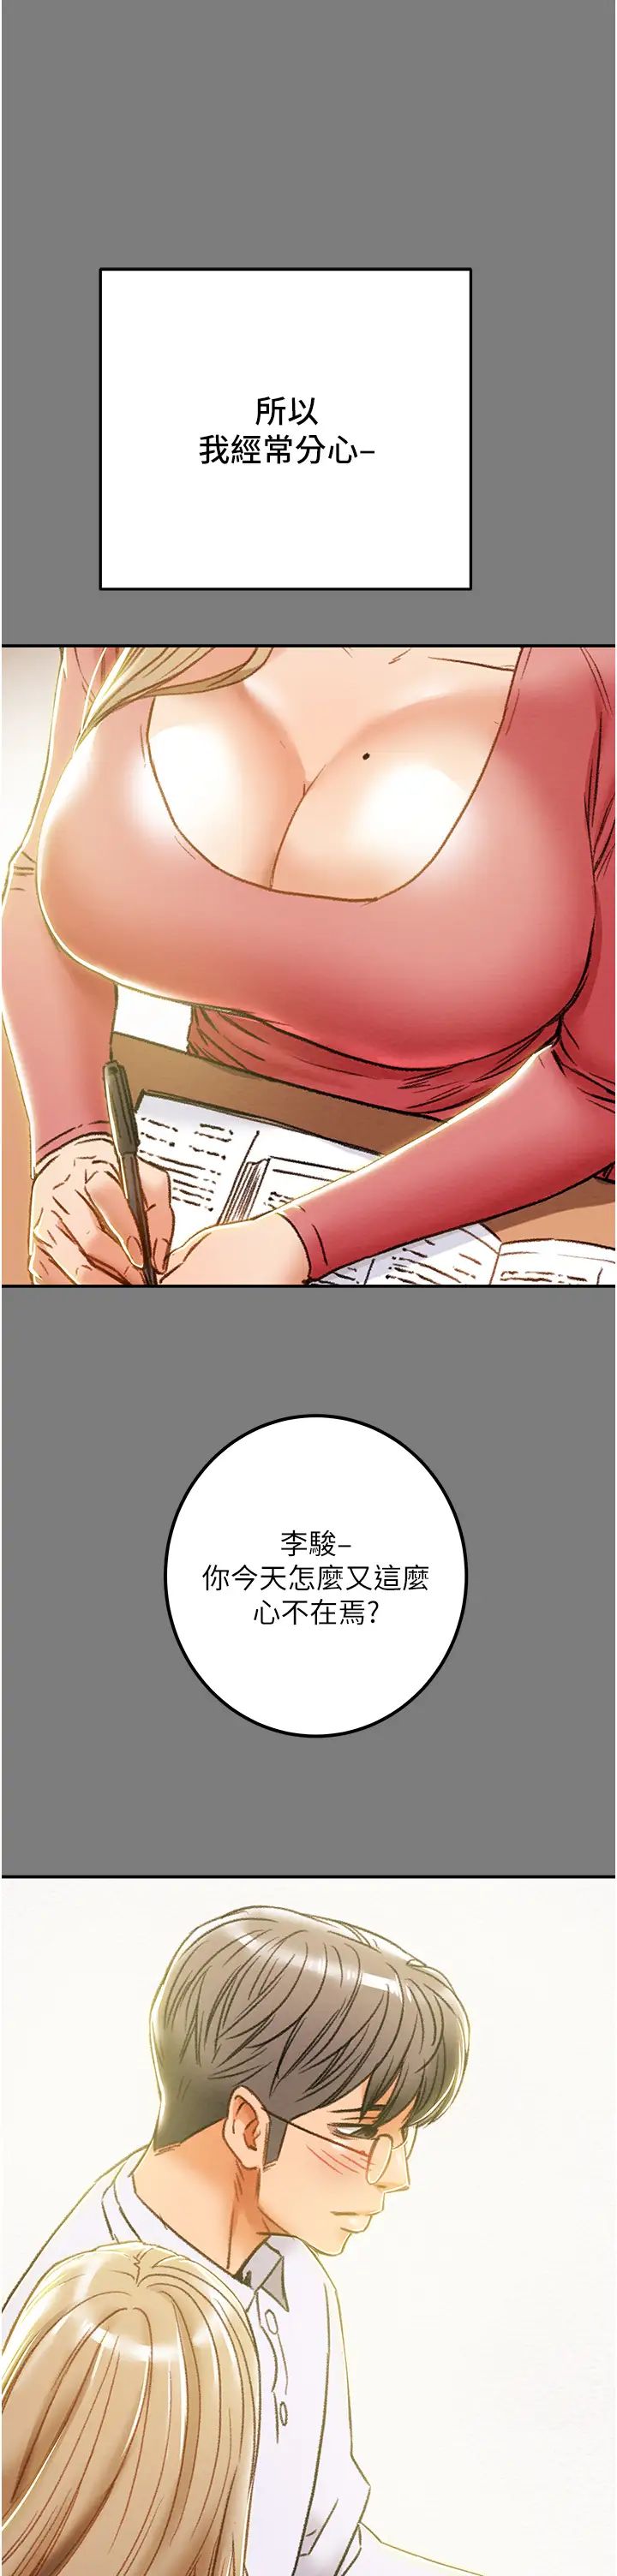 韩国污漫画 純情女攻略計劃 第61话初恋色气满满的胴体 29